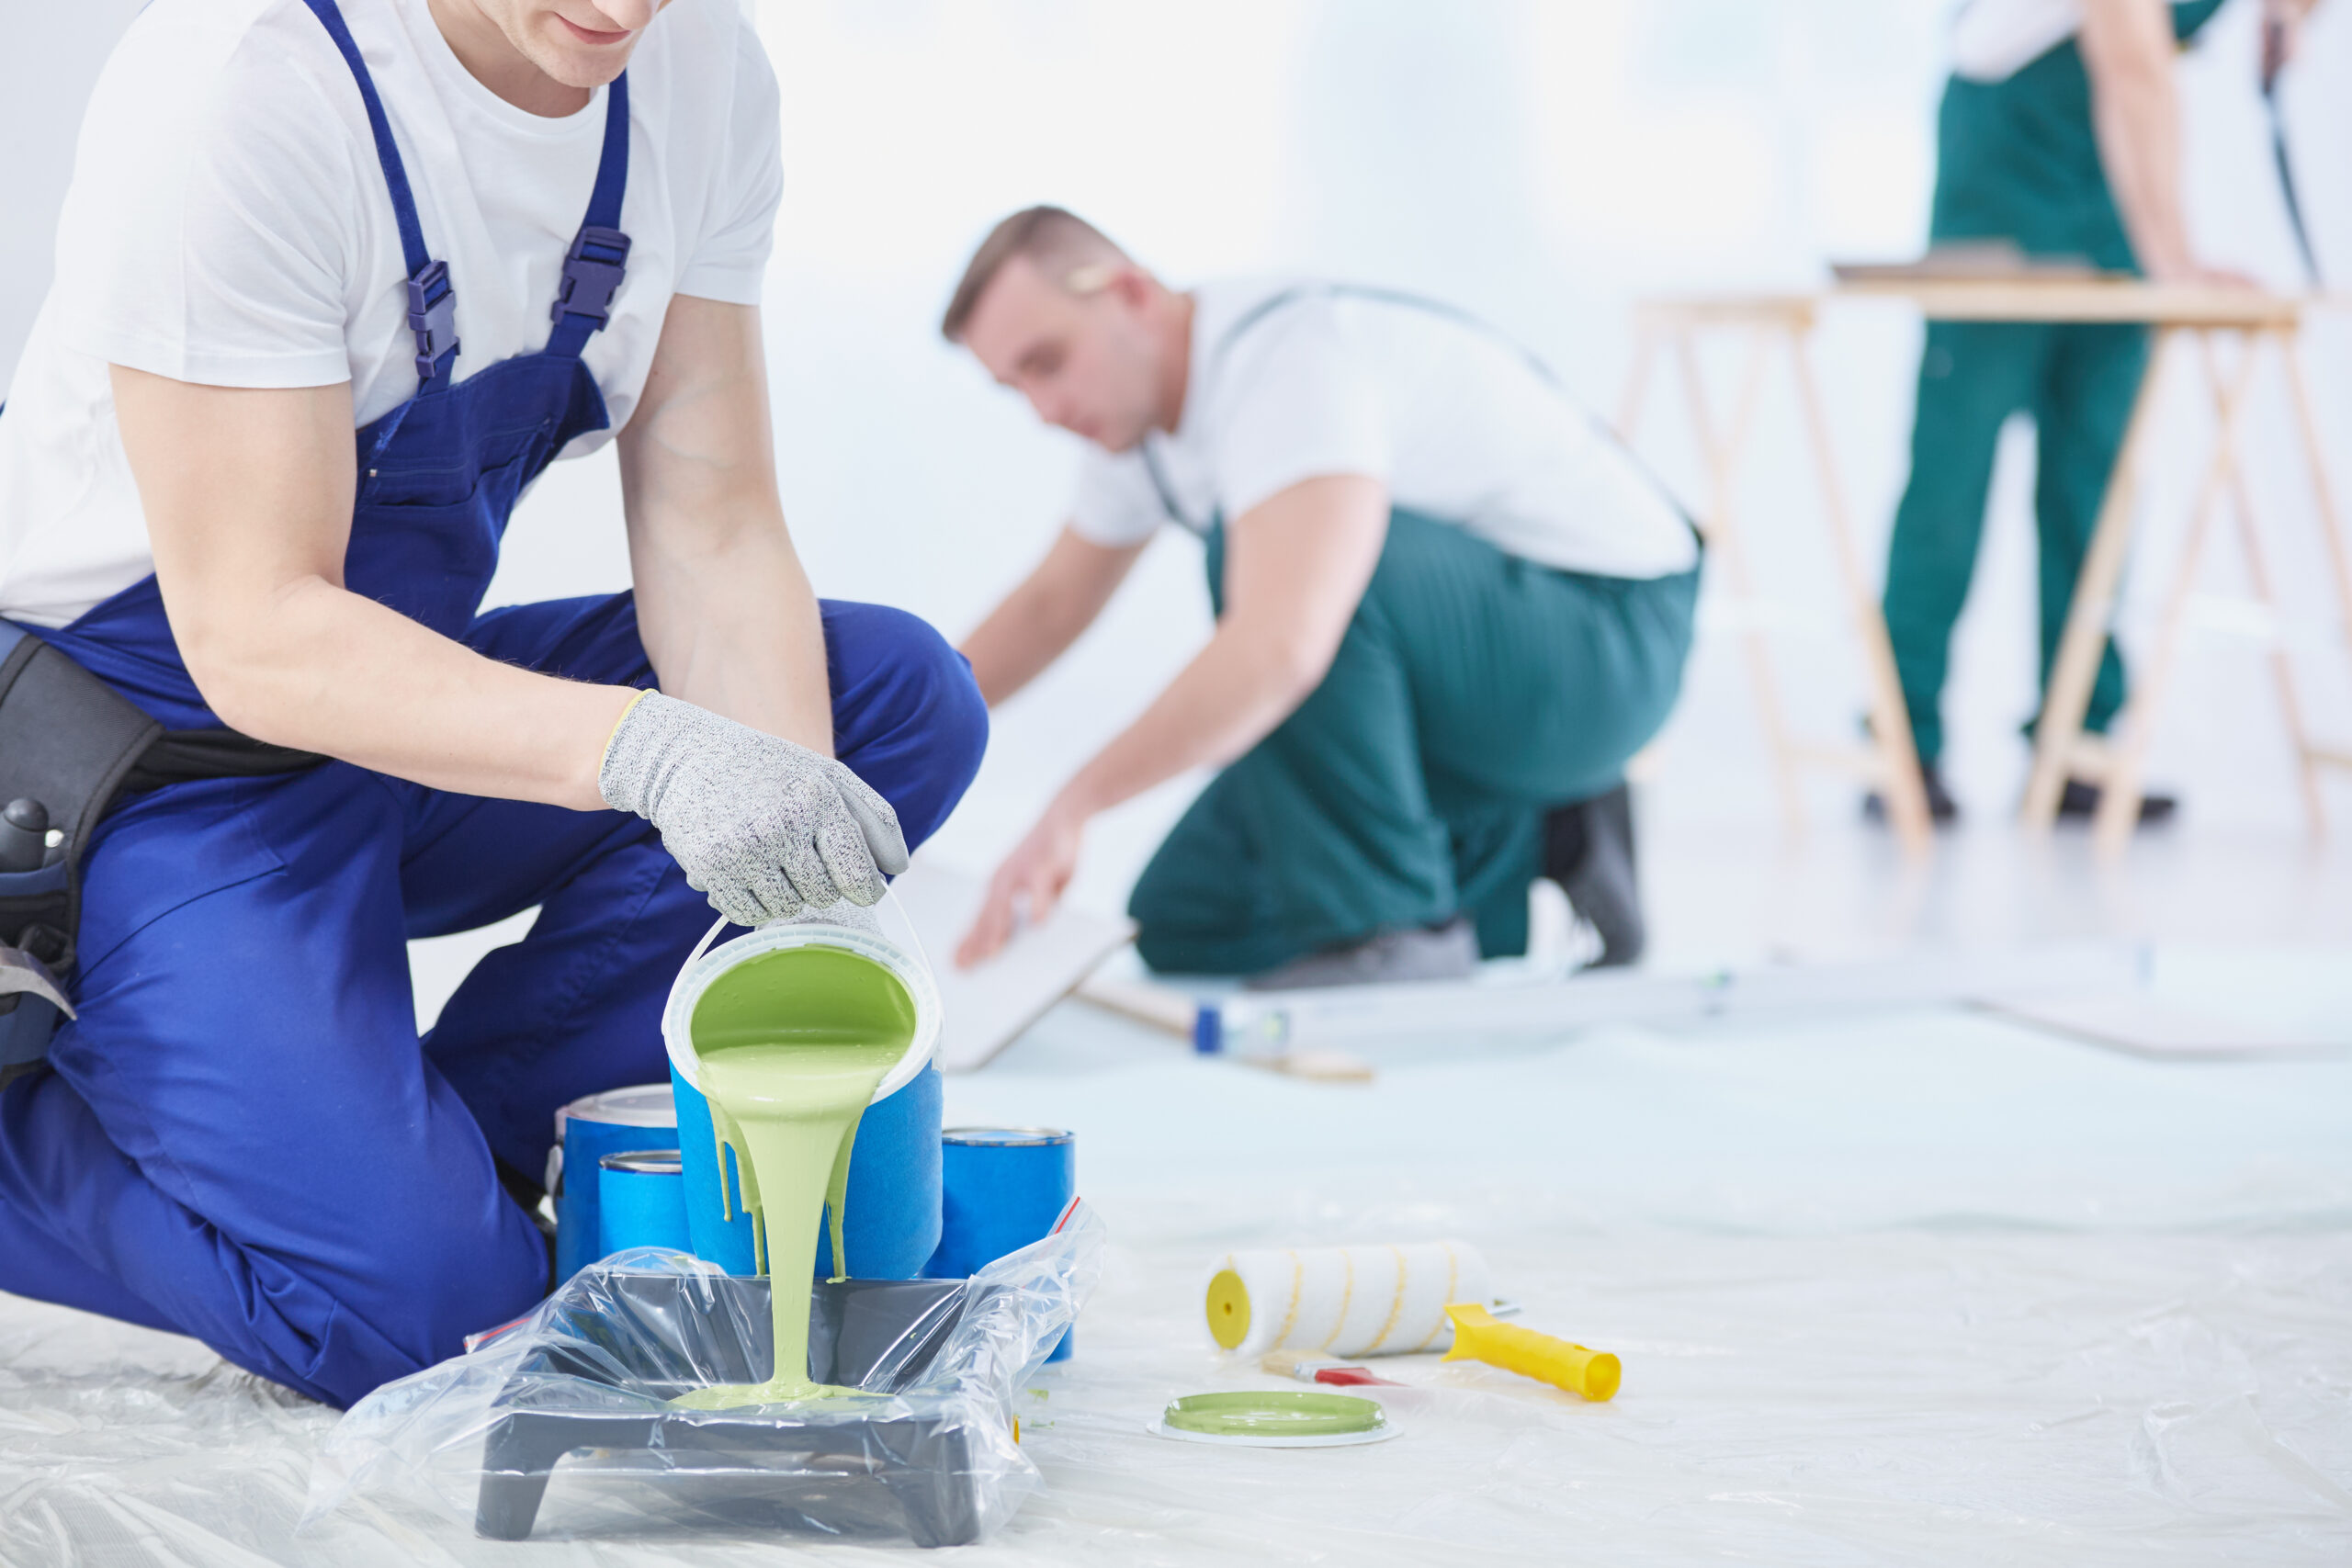 Ein Arbeiter im blauen Overall gießt grüne Farbe auf eine Tablette, während im Hintergrund zwei andere Arbeiter einen Holzfußboden verlegen und schneiden.